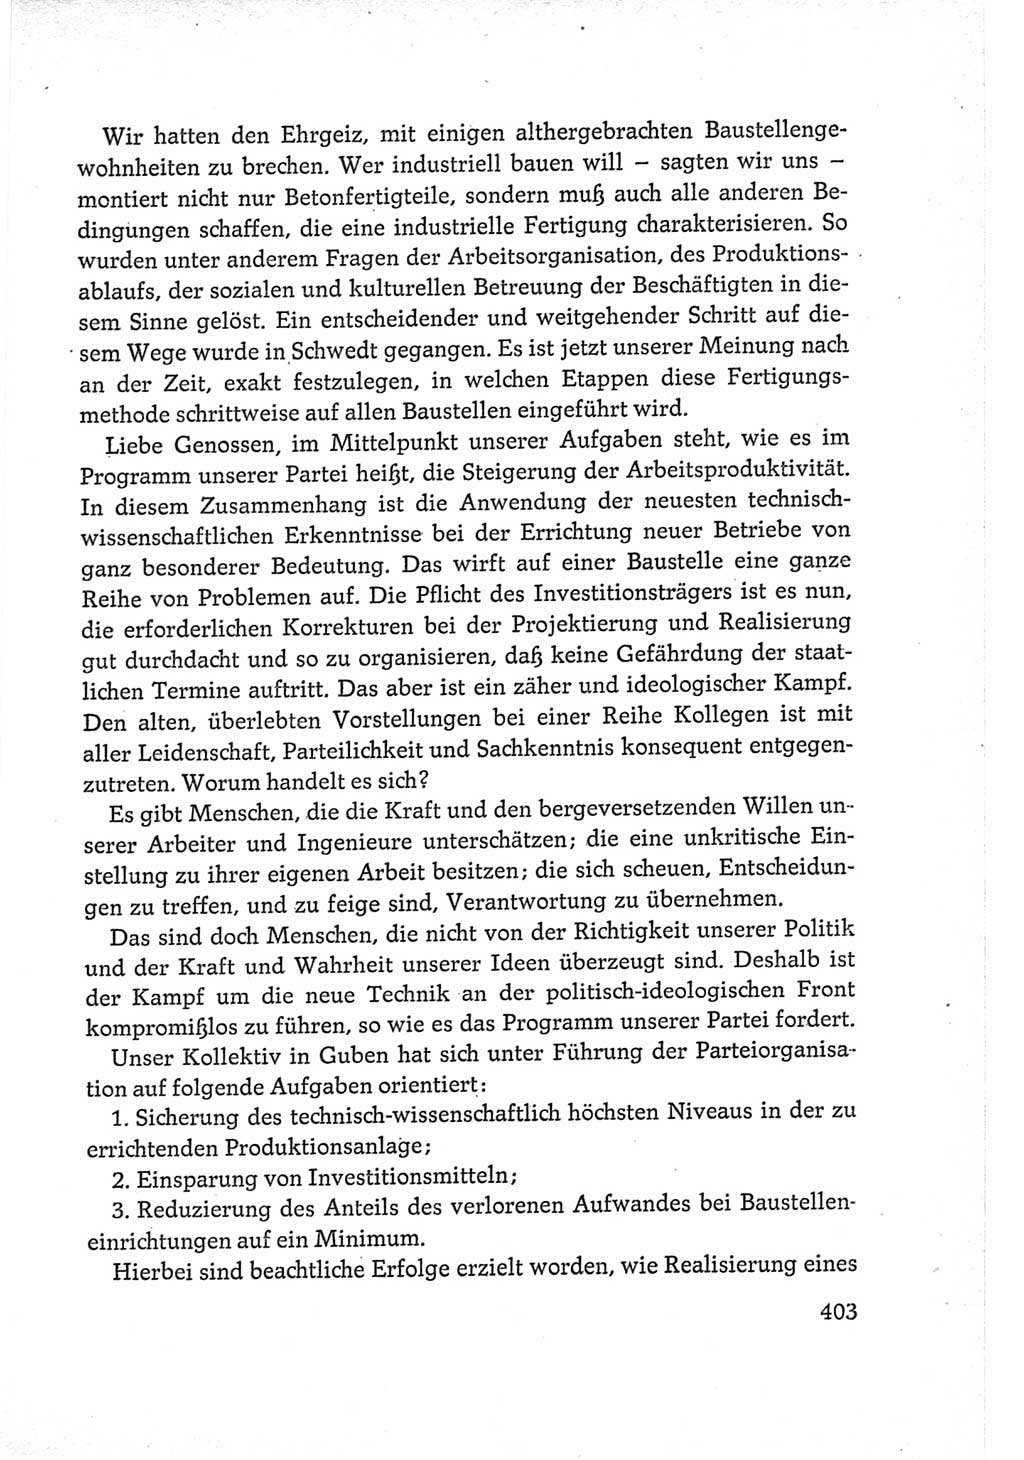 Protokoll der Verhandlungen des Ⅵ. Parteitages der Sozialistischen Einheitspartei Deutschlands (SED) [Deutsche Demokratische Republik (DDR)] 1963, Band Ⅲ, Seite 403 (Prot. Verh. Ⅵ. PT SED DDR 1963, Bd. Ⅲ, S. 403)